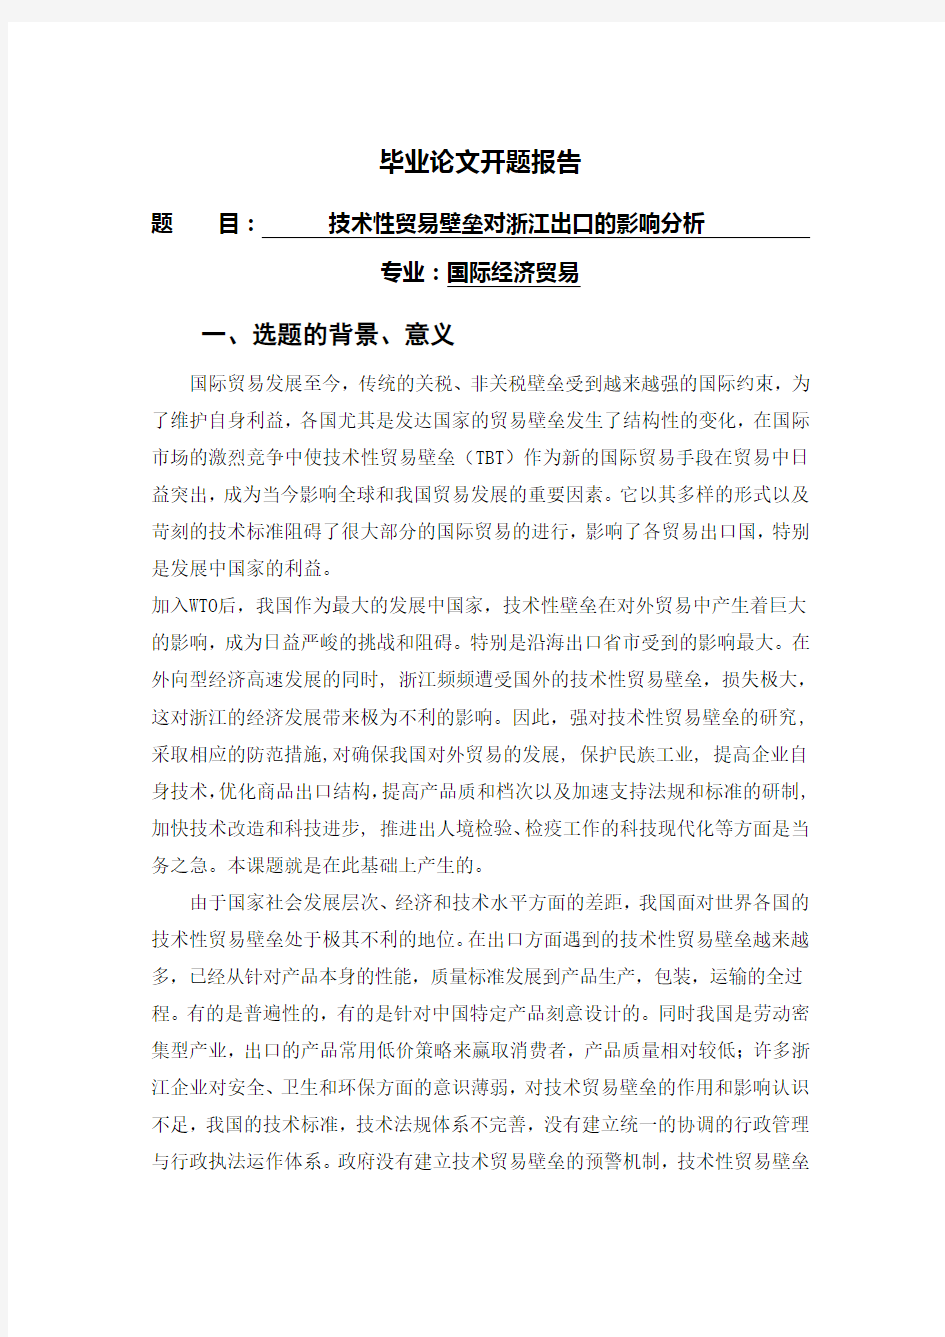 技术性贸易壁垒对浙江出口的影响分析【开题报告】